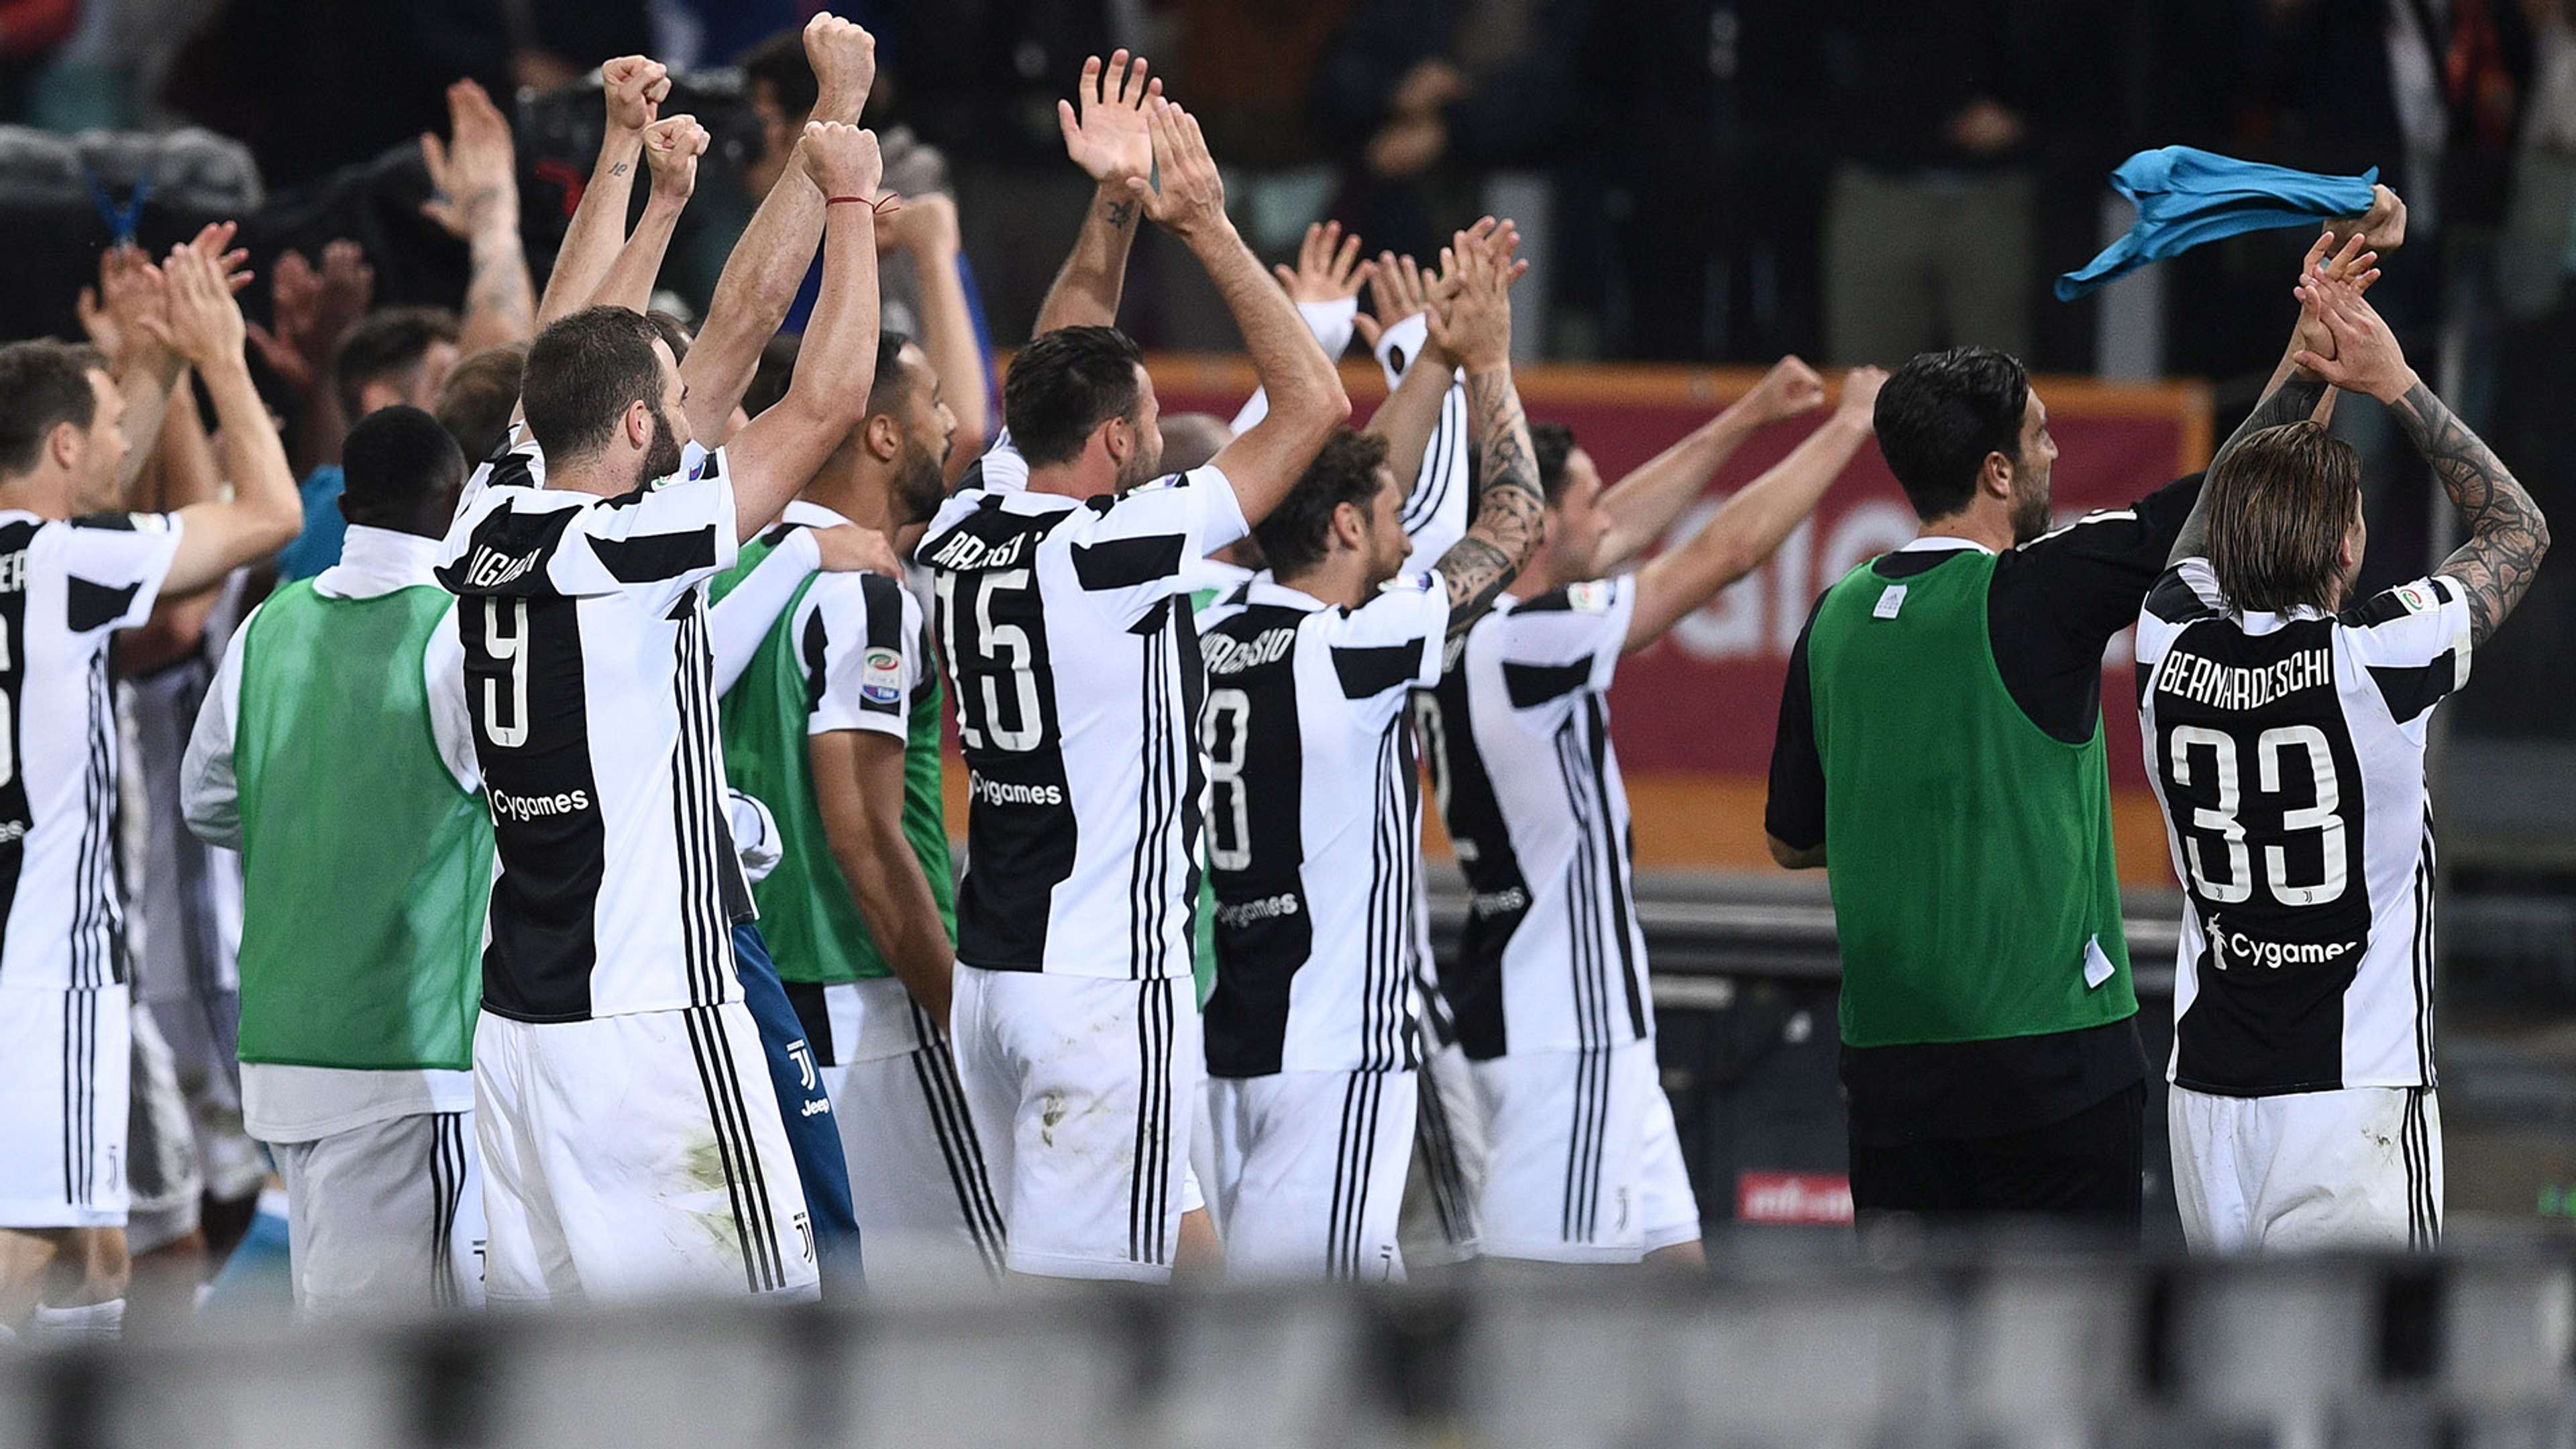 Juventus celebrating Scudetto